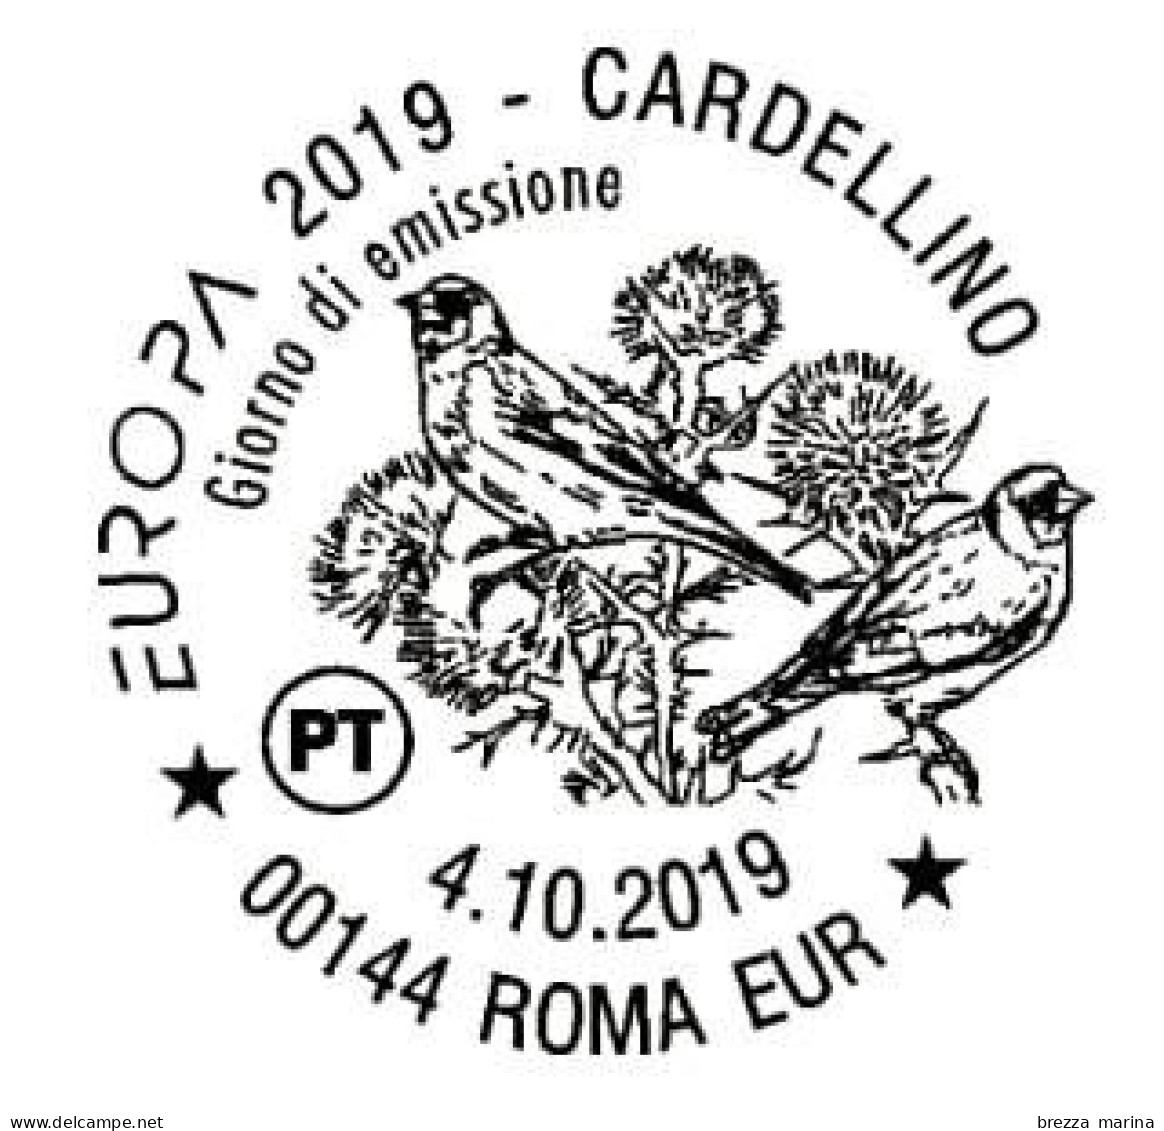 ITALIA - Usato - 2019 - Europa 2019 - Uccelli - Bird - Cardellino – B 50g - 2011-20: Usati